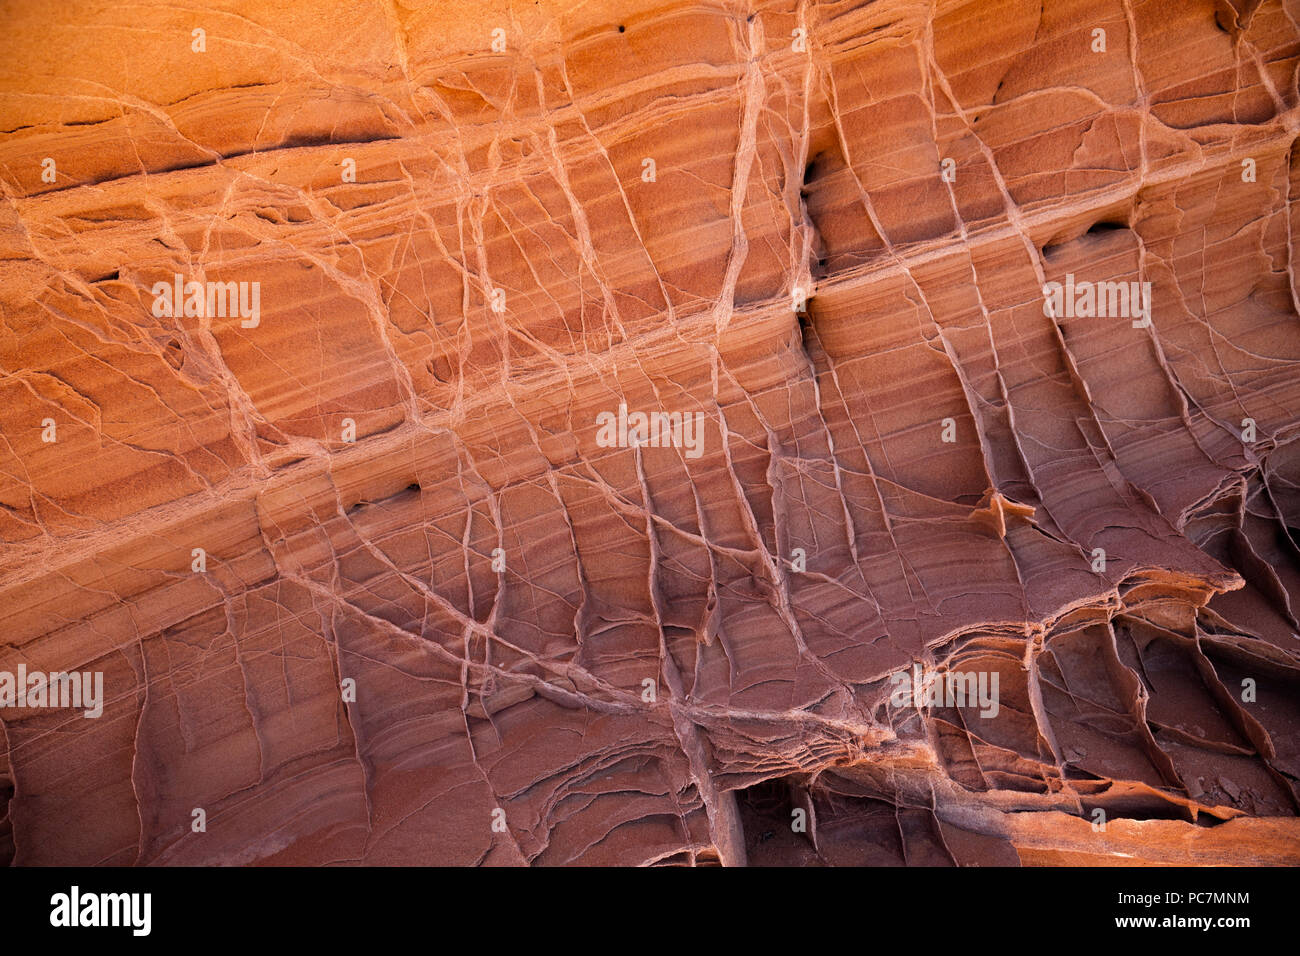 AZ 00214-00 ... ARIZONA - Verdichtung Venen Verhärten in geschichteten Sandstein in die Coyote Buttes Bereich des Paria Canyon - Vermilion Cliffs Wilderness. Stockfoto